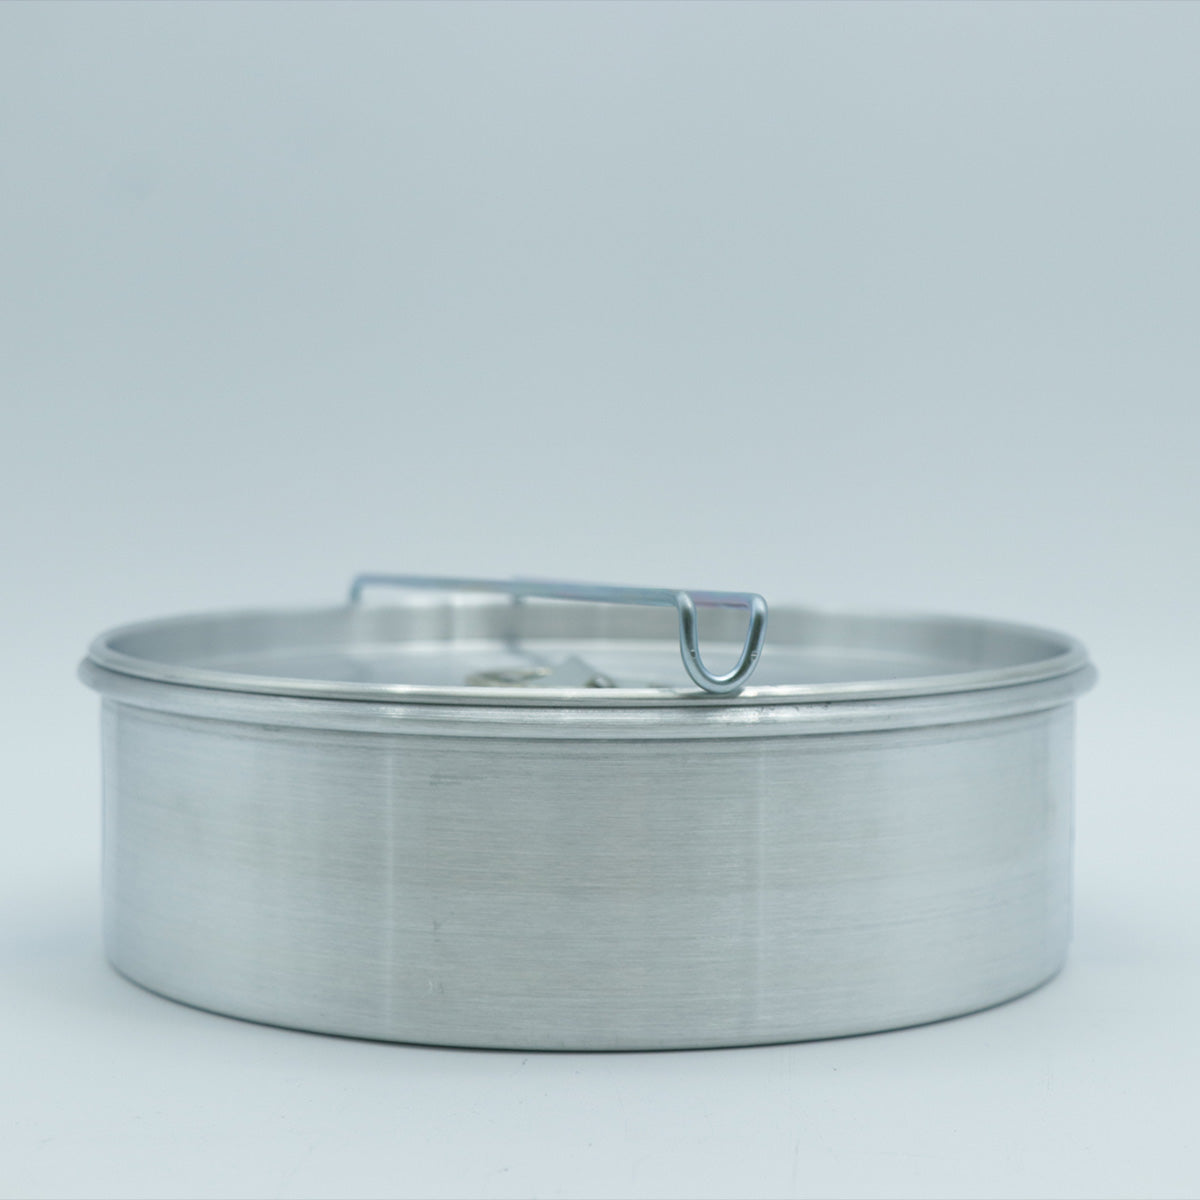 Flanera de Aluminio con Tapa de 20 cm con Cierre